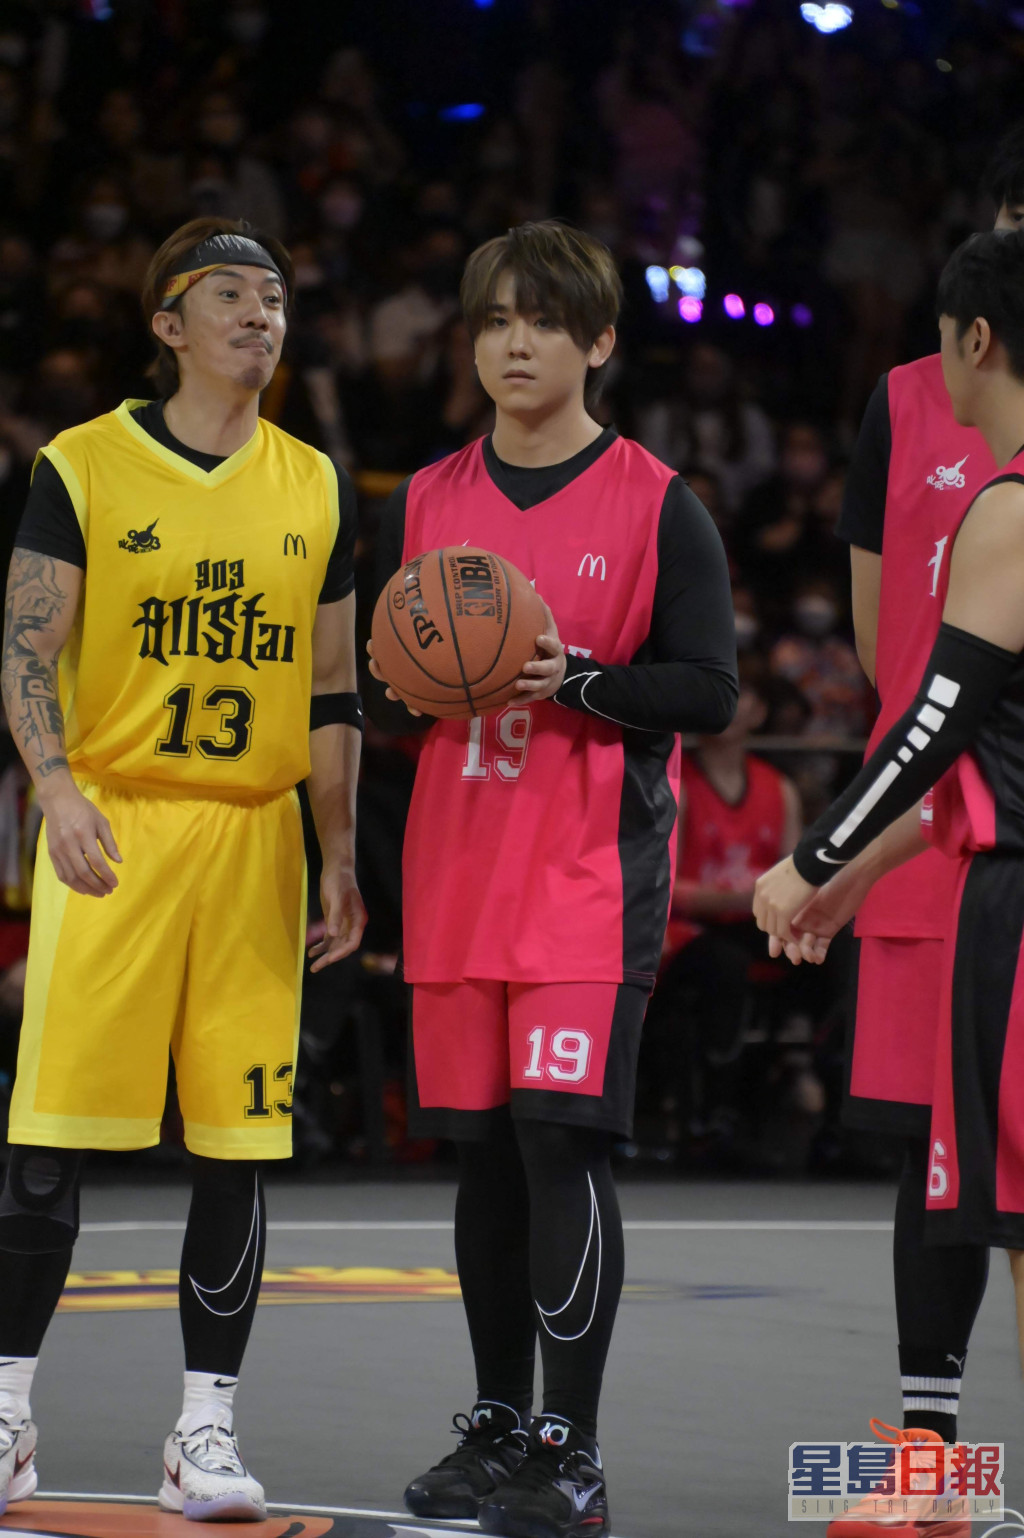 姜涛去年11月初于《903 AllStar 篮球赛》第4节比赛时不慎受伤。